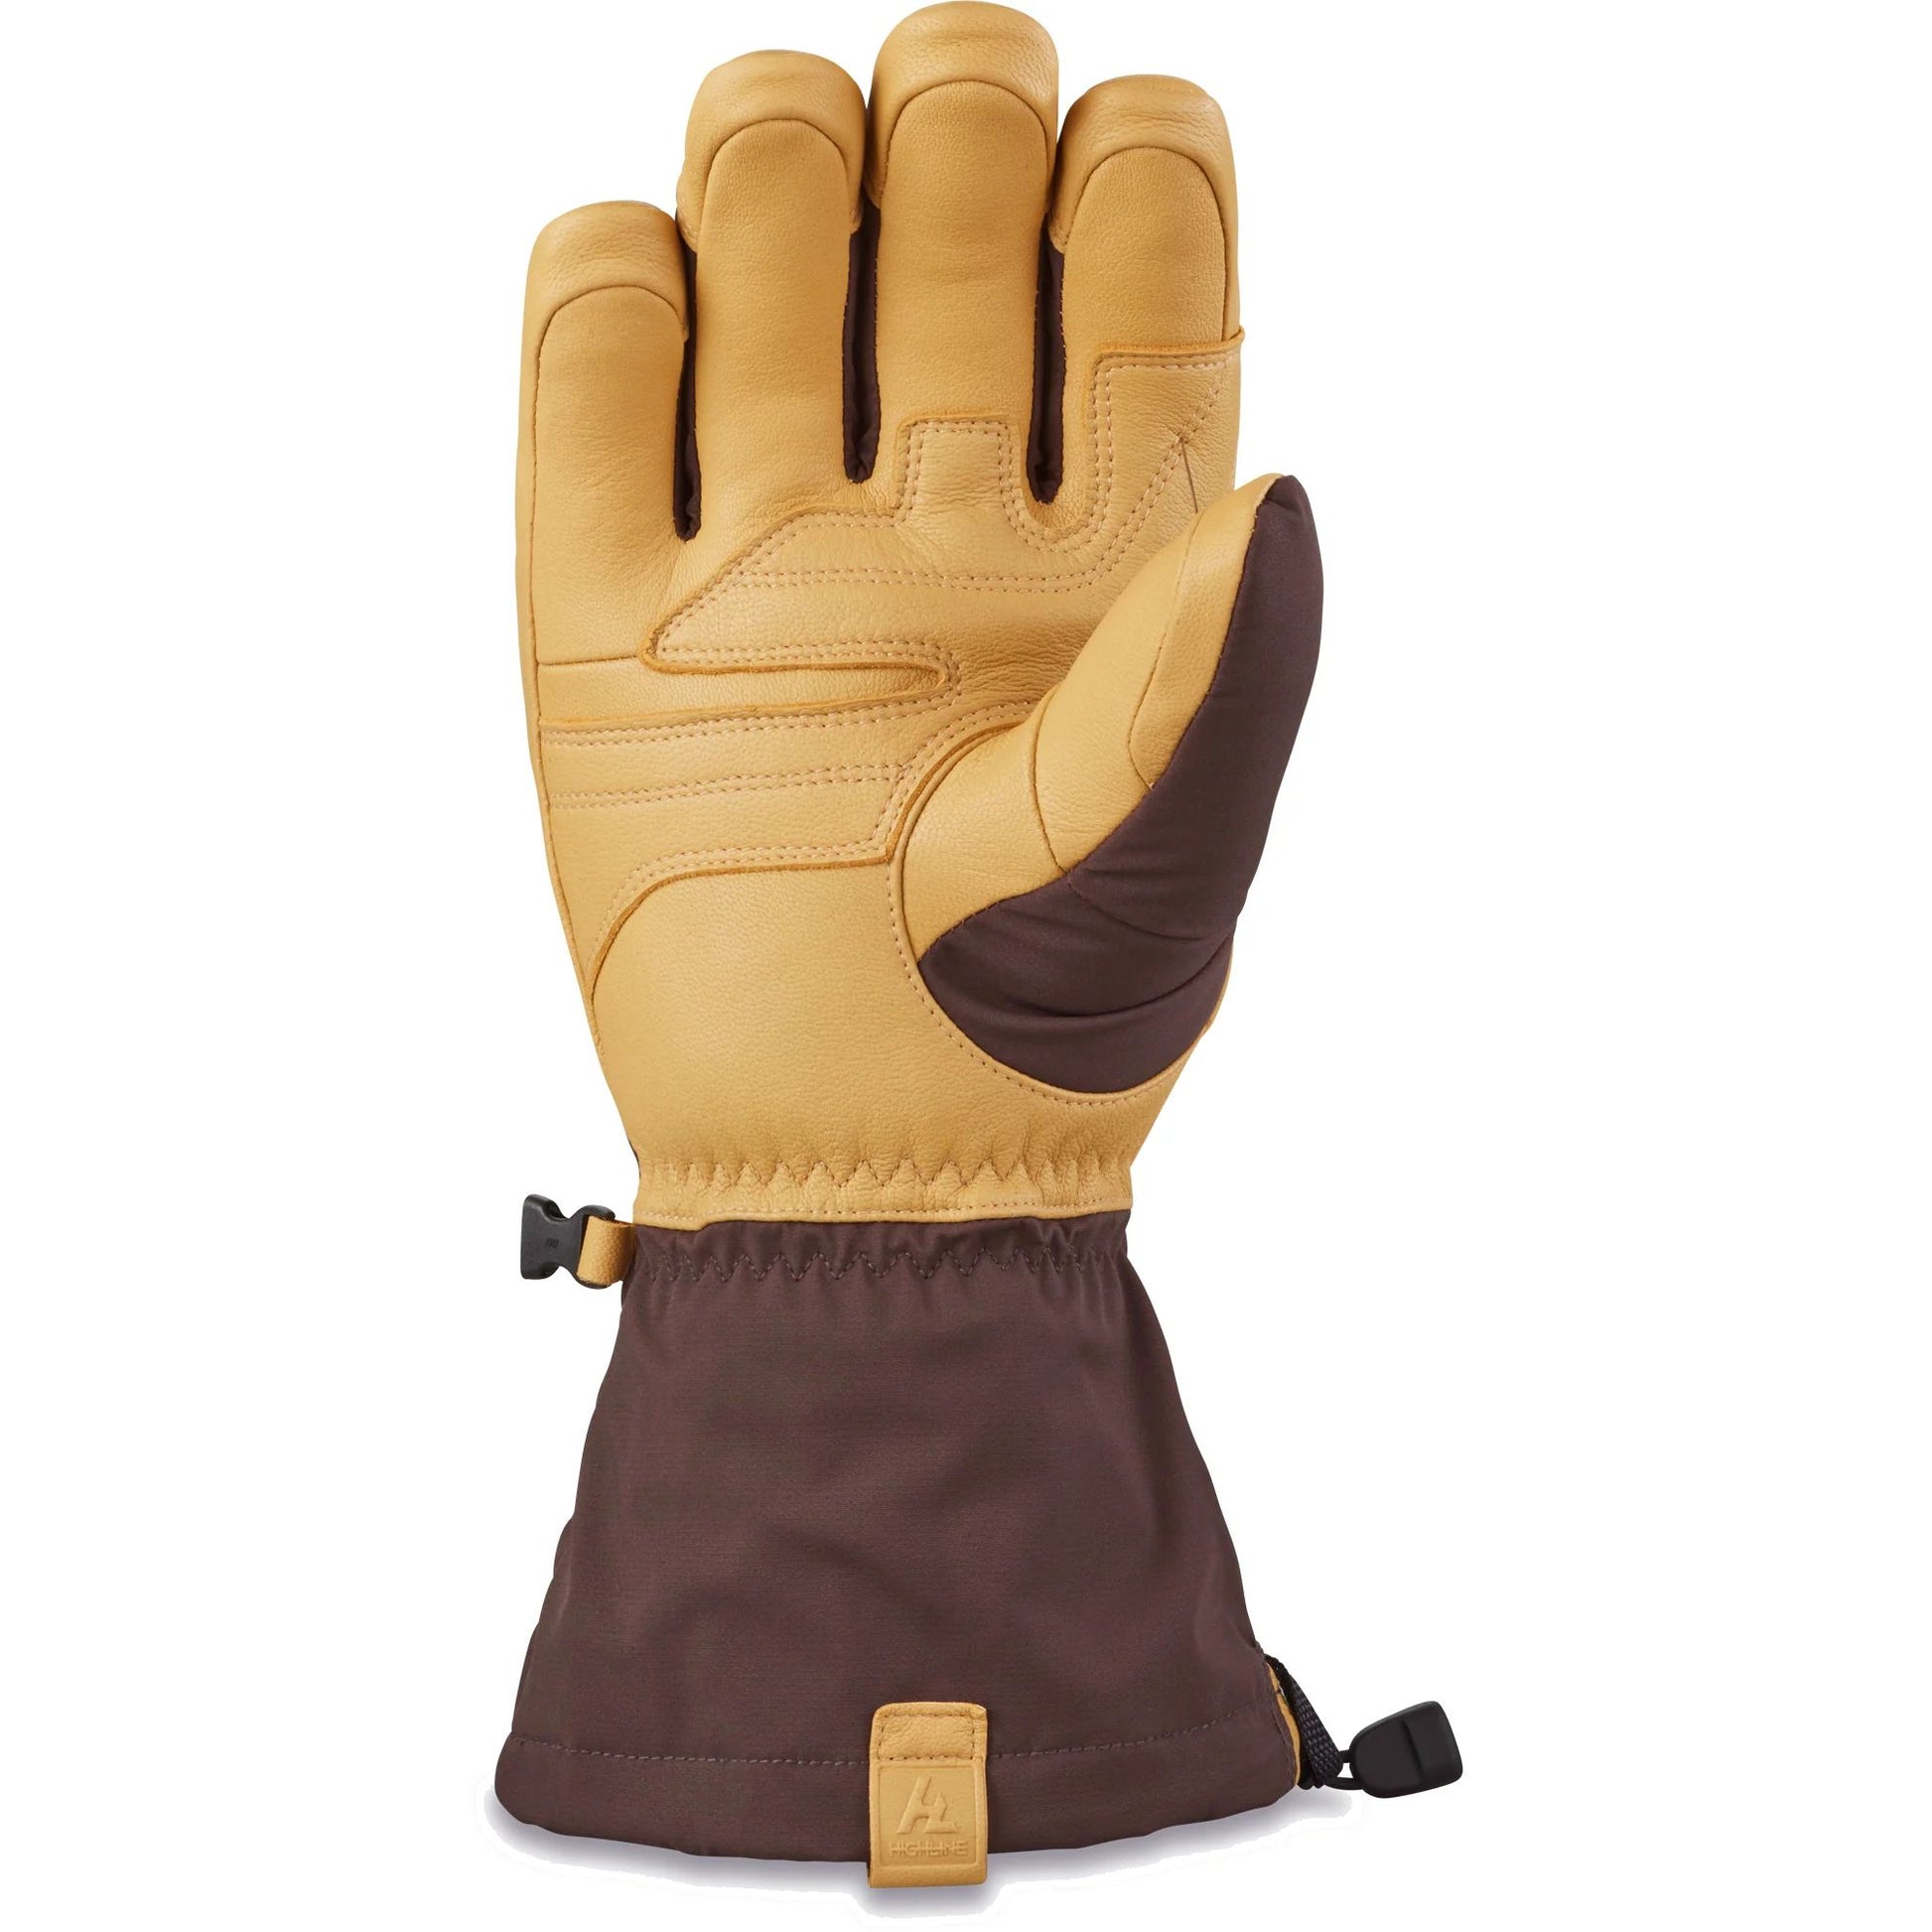 Dakine Excursion GORE-TEX Glove Tan Mole - Dakine Snow Gloves